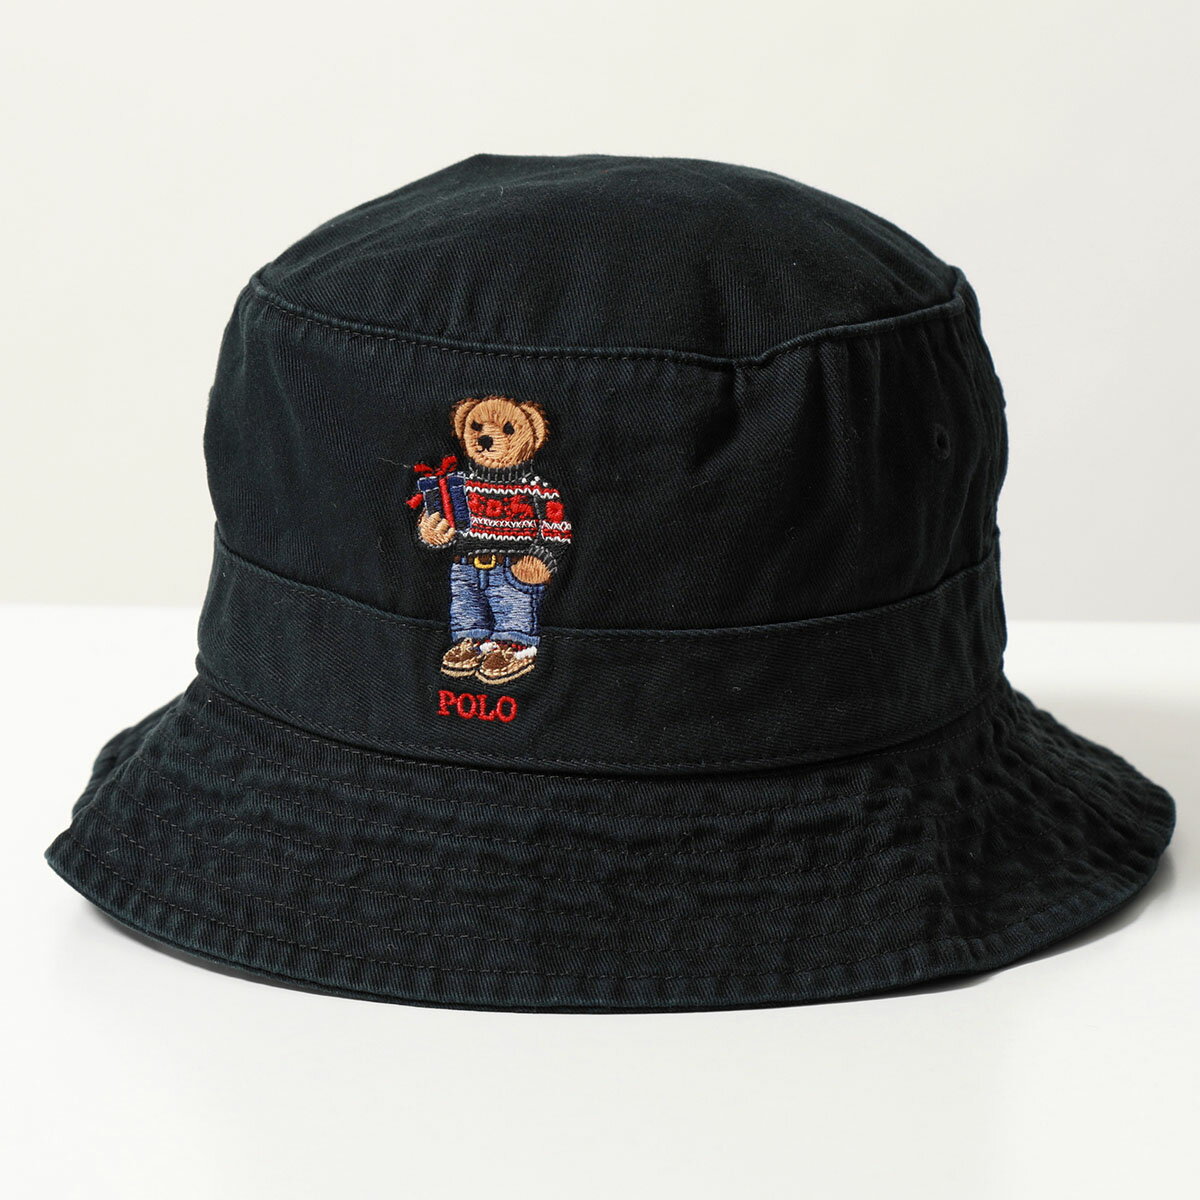 Polo Ralph Lauren ラルフローレン バケットハット LOFT BUCKET-HAT 710917438001 レディース ポロベア ツイル コットン 刺繍 帽子 BLACK